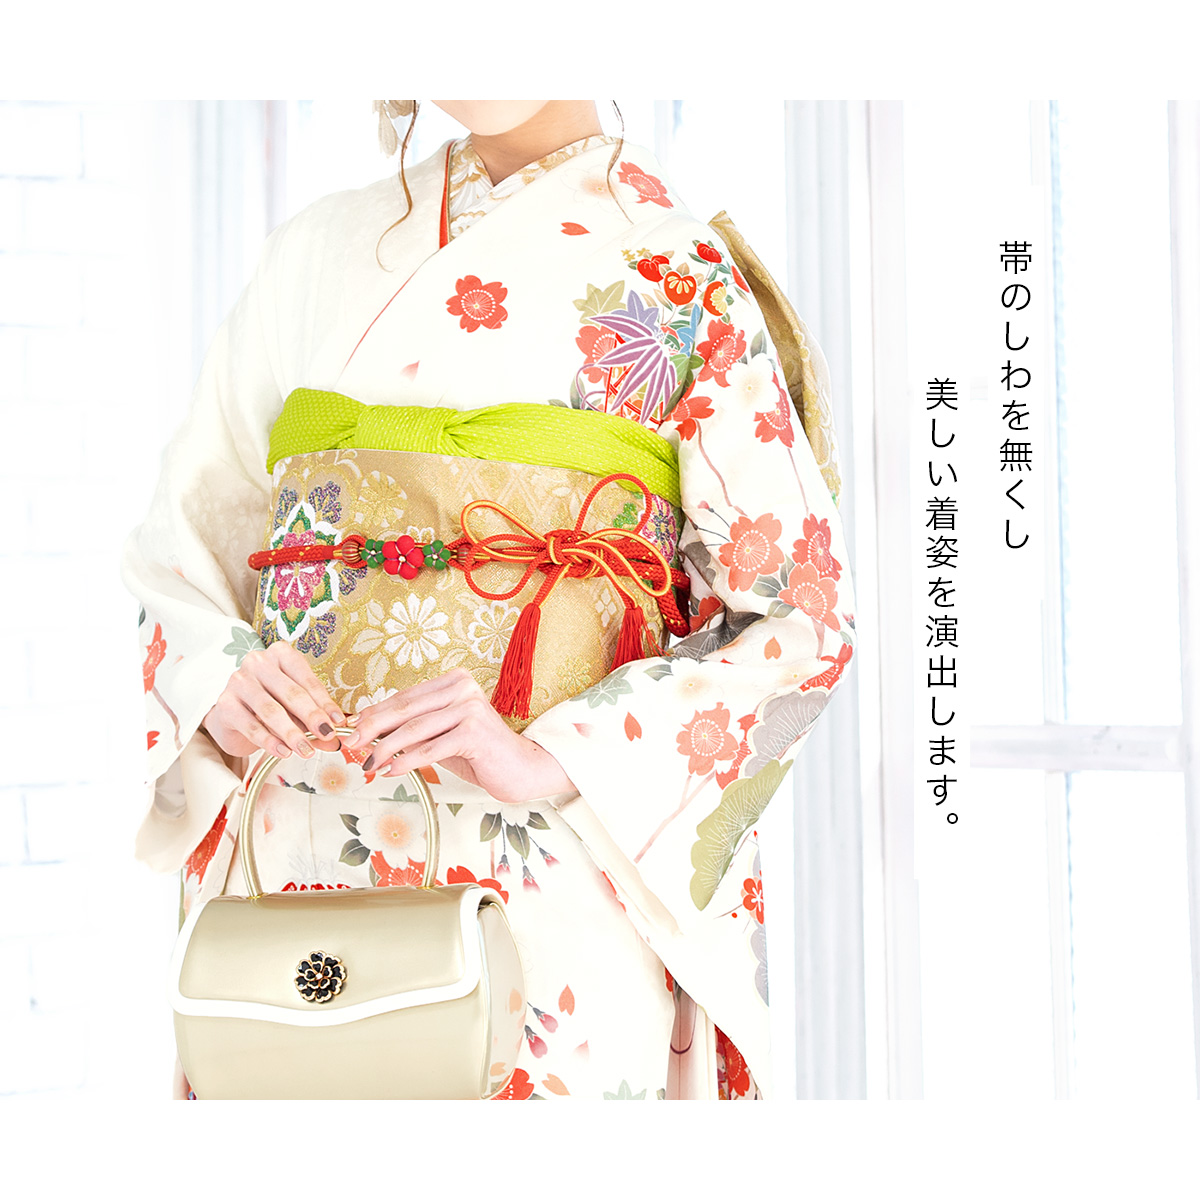 新作モデル 着付け小物 帯板 前板 ポケット付き ベルト付き 日本製 通年 レディース 女性 和装小物 ピンク 菊 